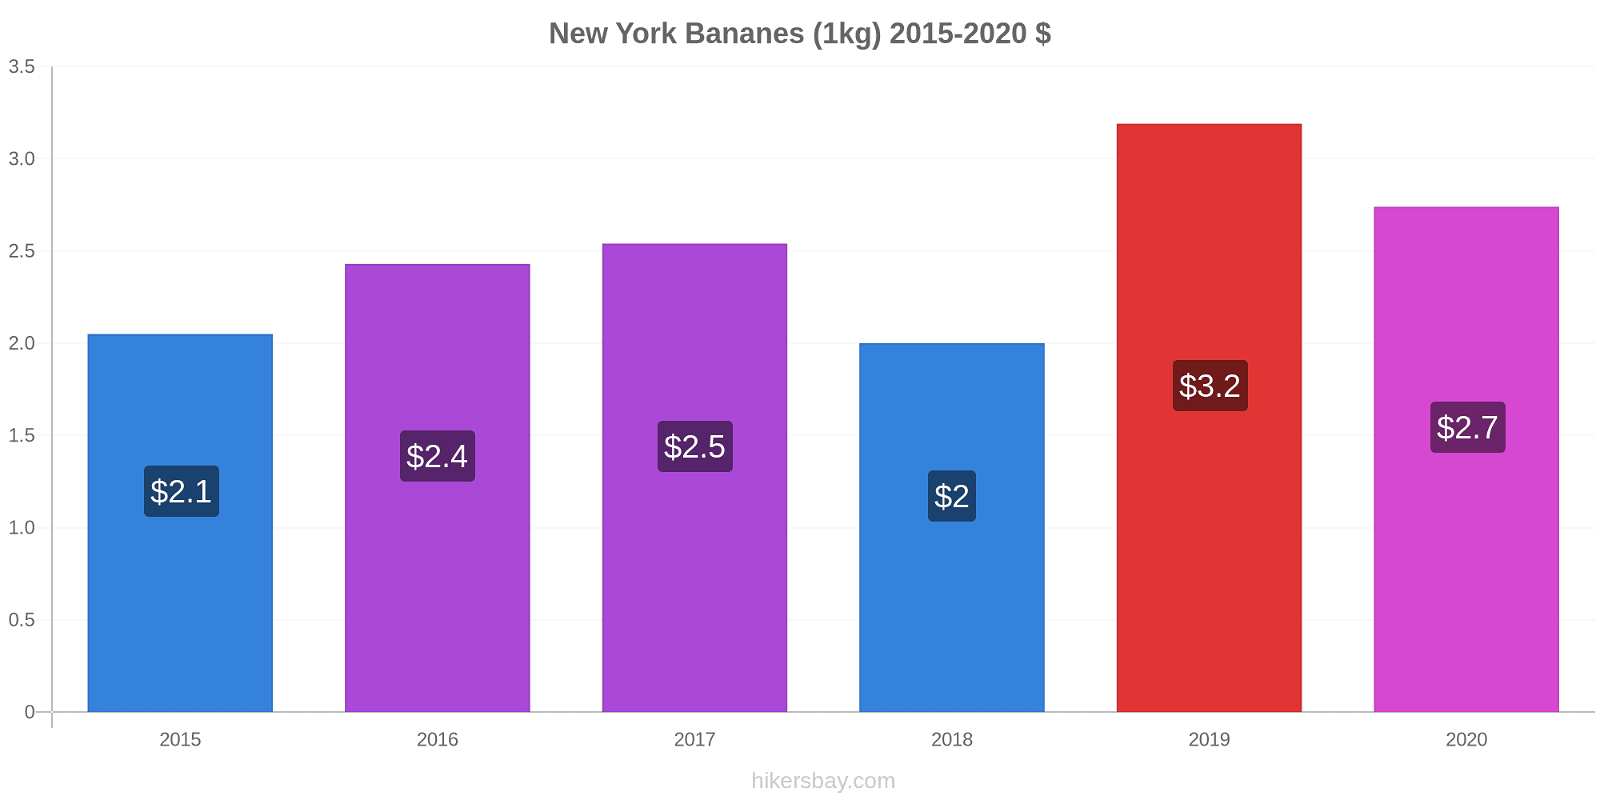 New York changements de prix Bananes (1kg) hikersbay.com